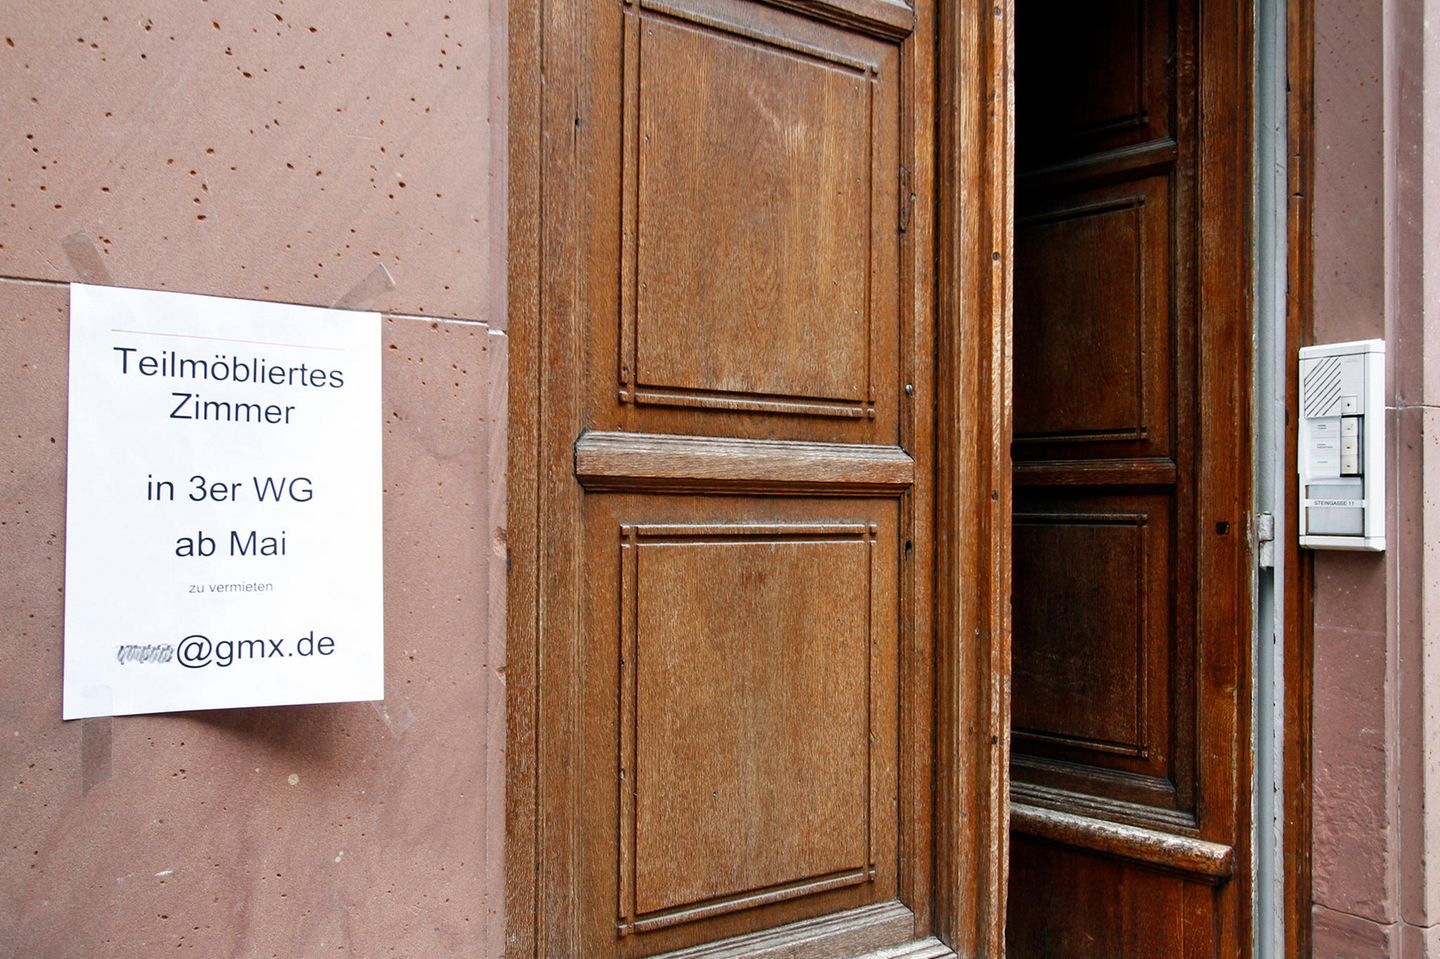 Freies WG-Zimmer: Anschlag an einem Hauseingang in Heidelberg